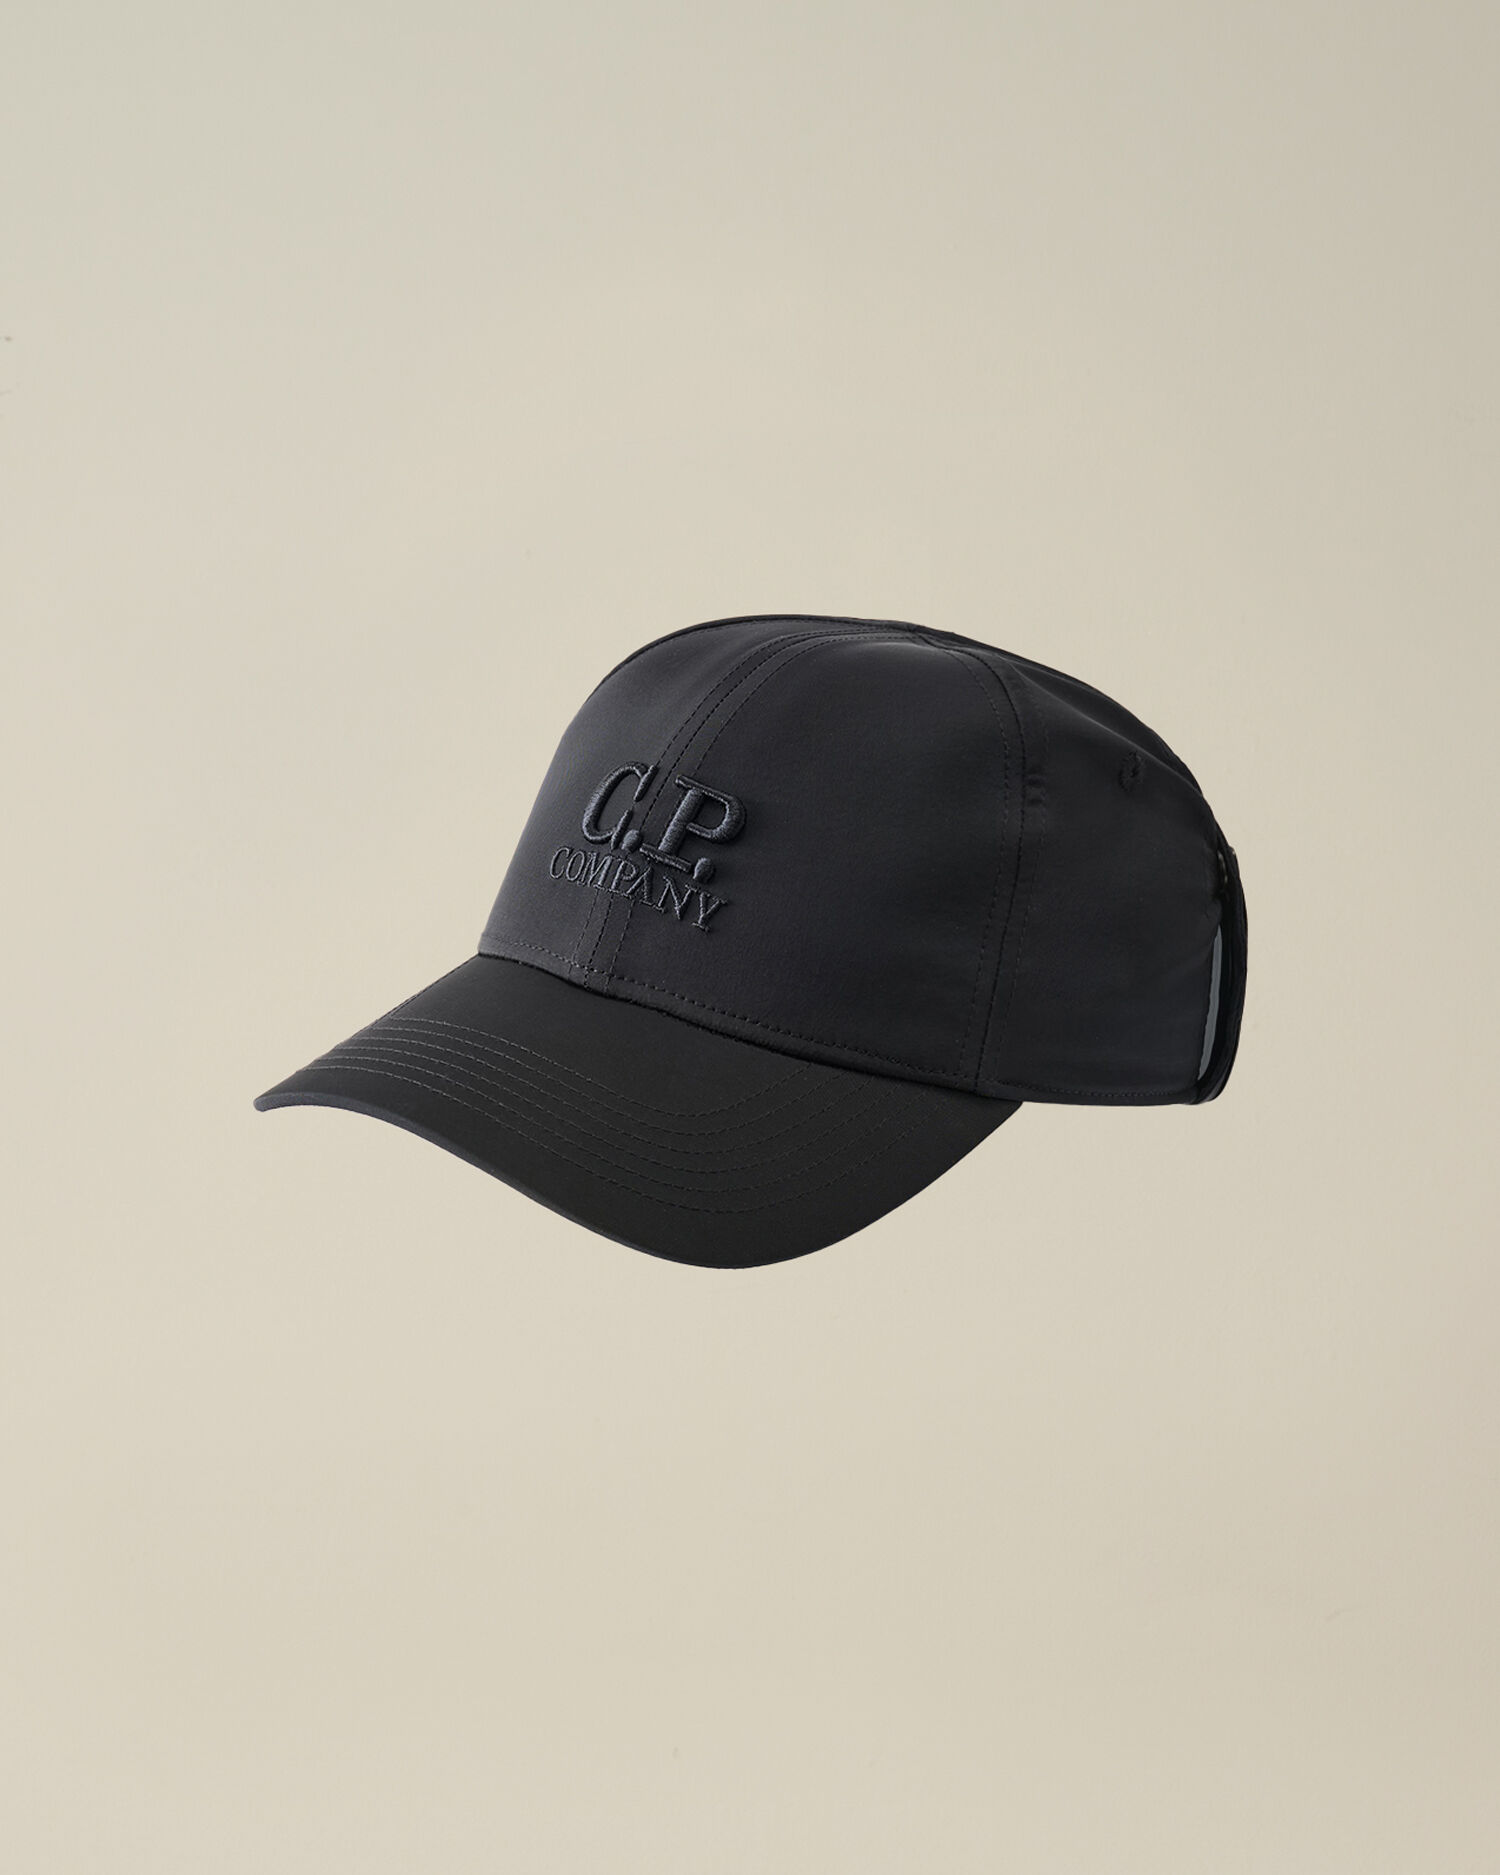 Hats - Men's Caps & Beanies with Lenses | C.P. Company